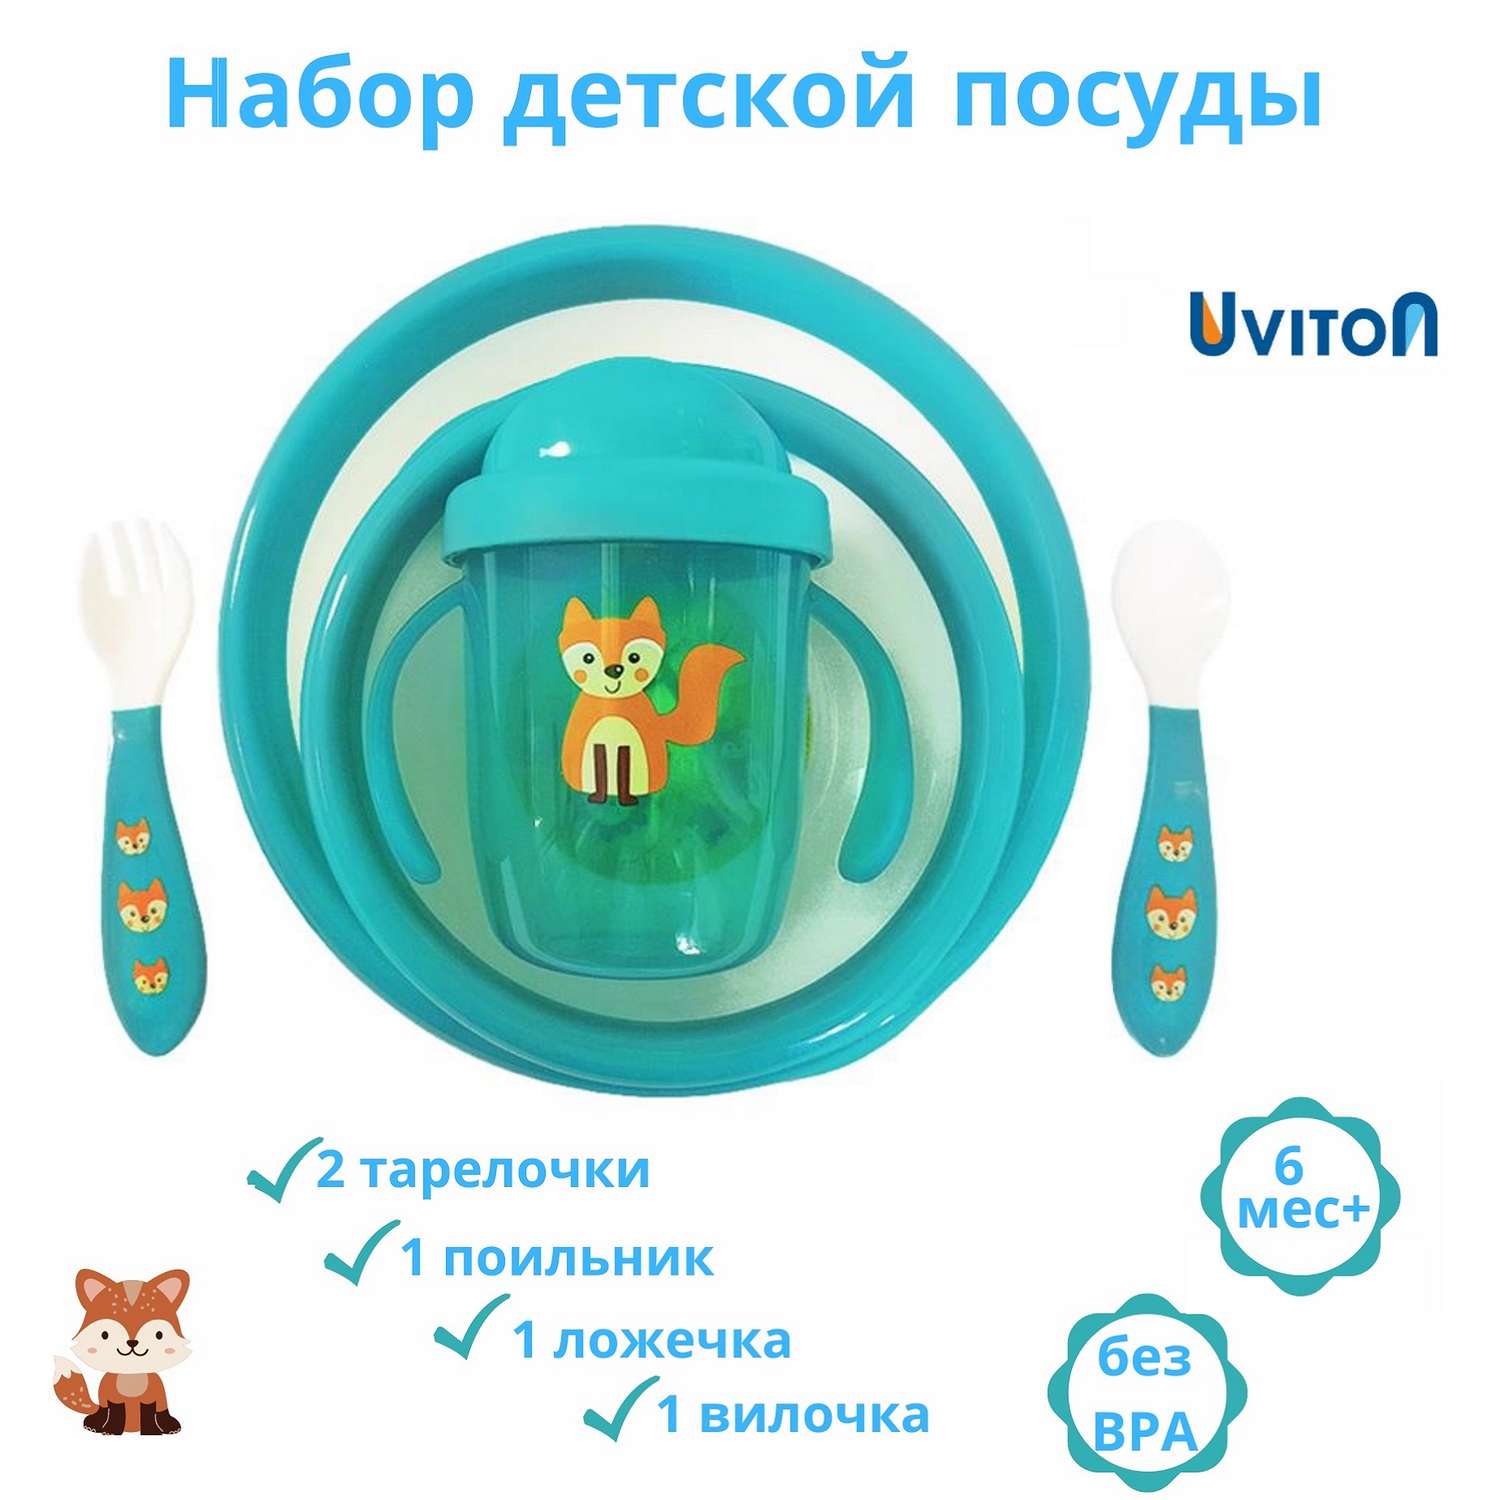 Набор детской посуды Uviton 5 предметов Бирюзовый 0144/01 - фото 2